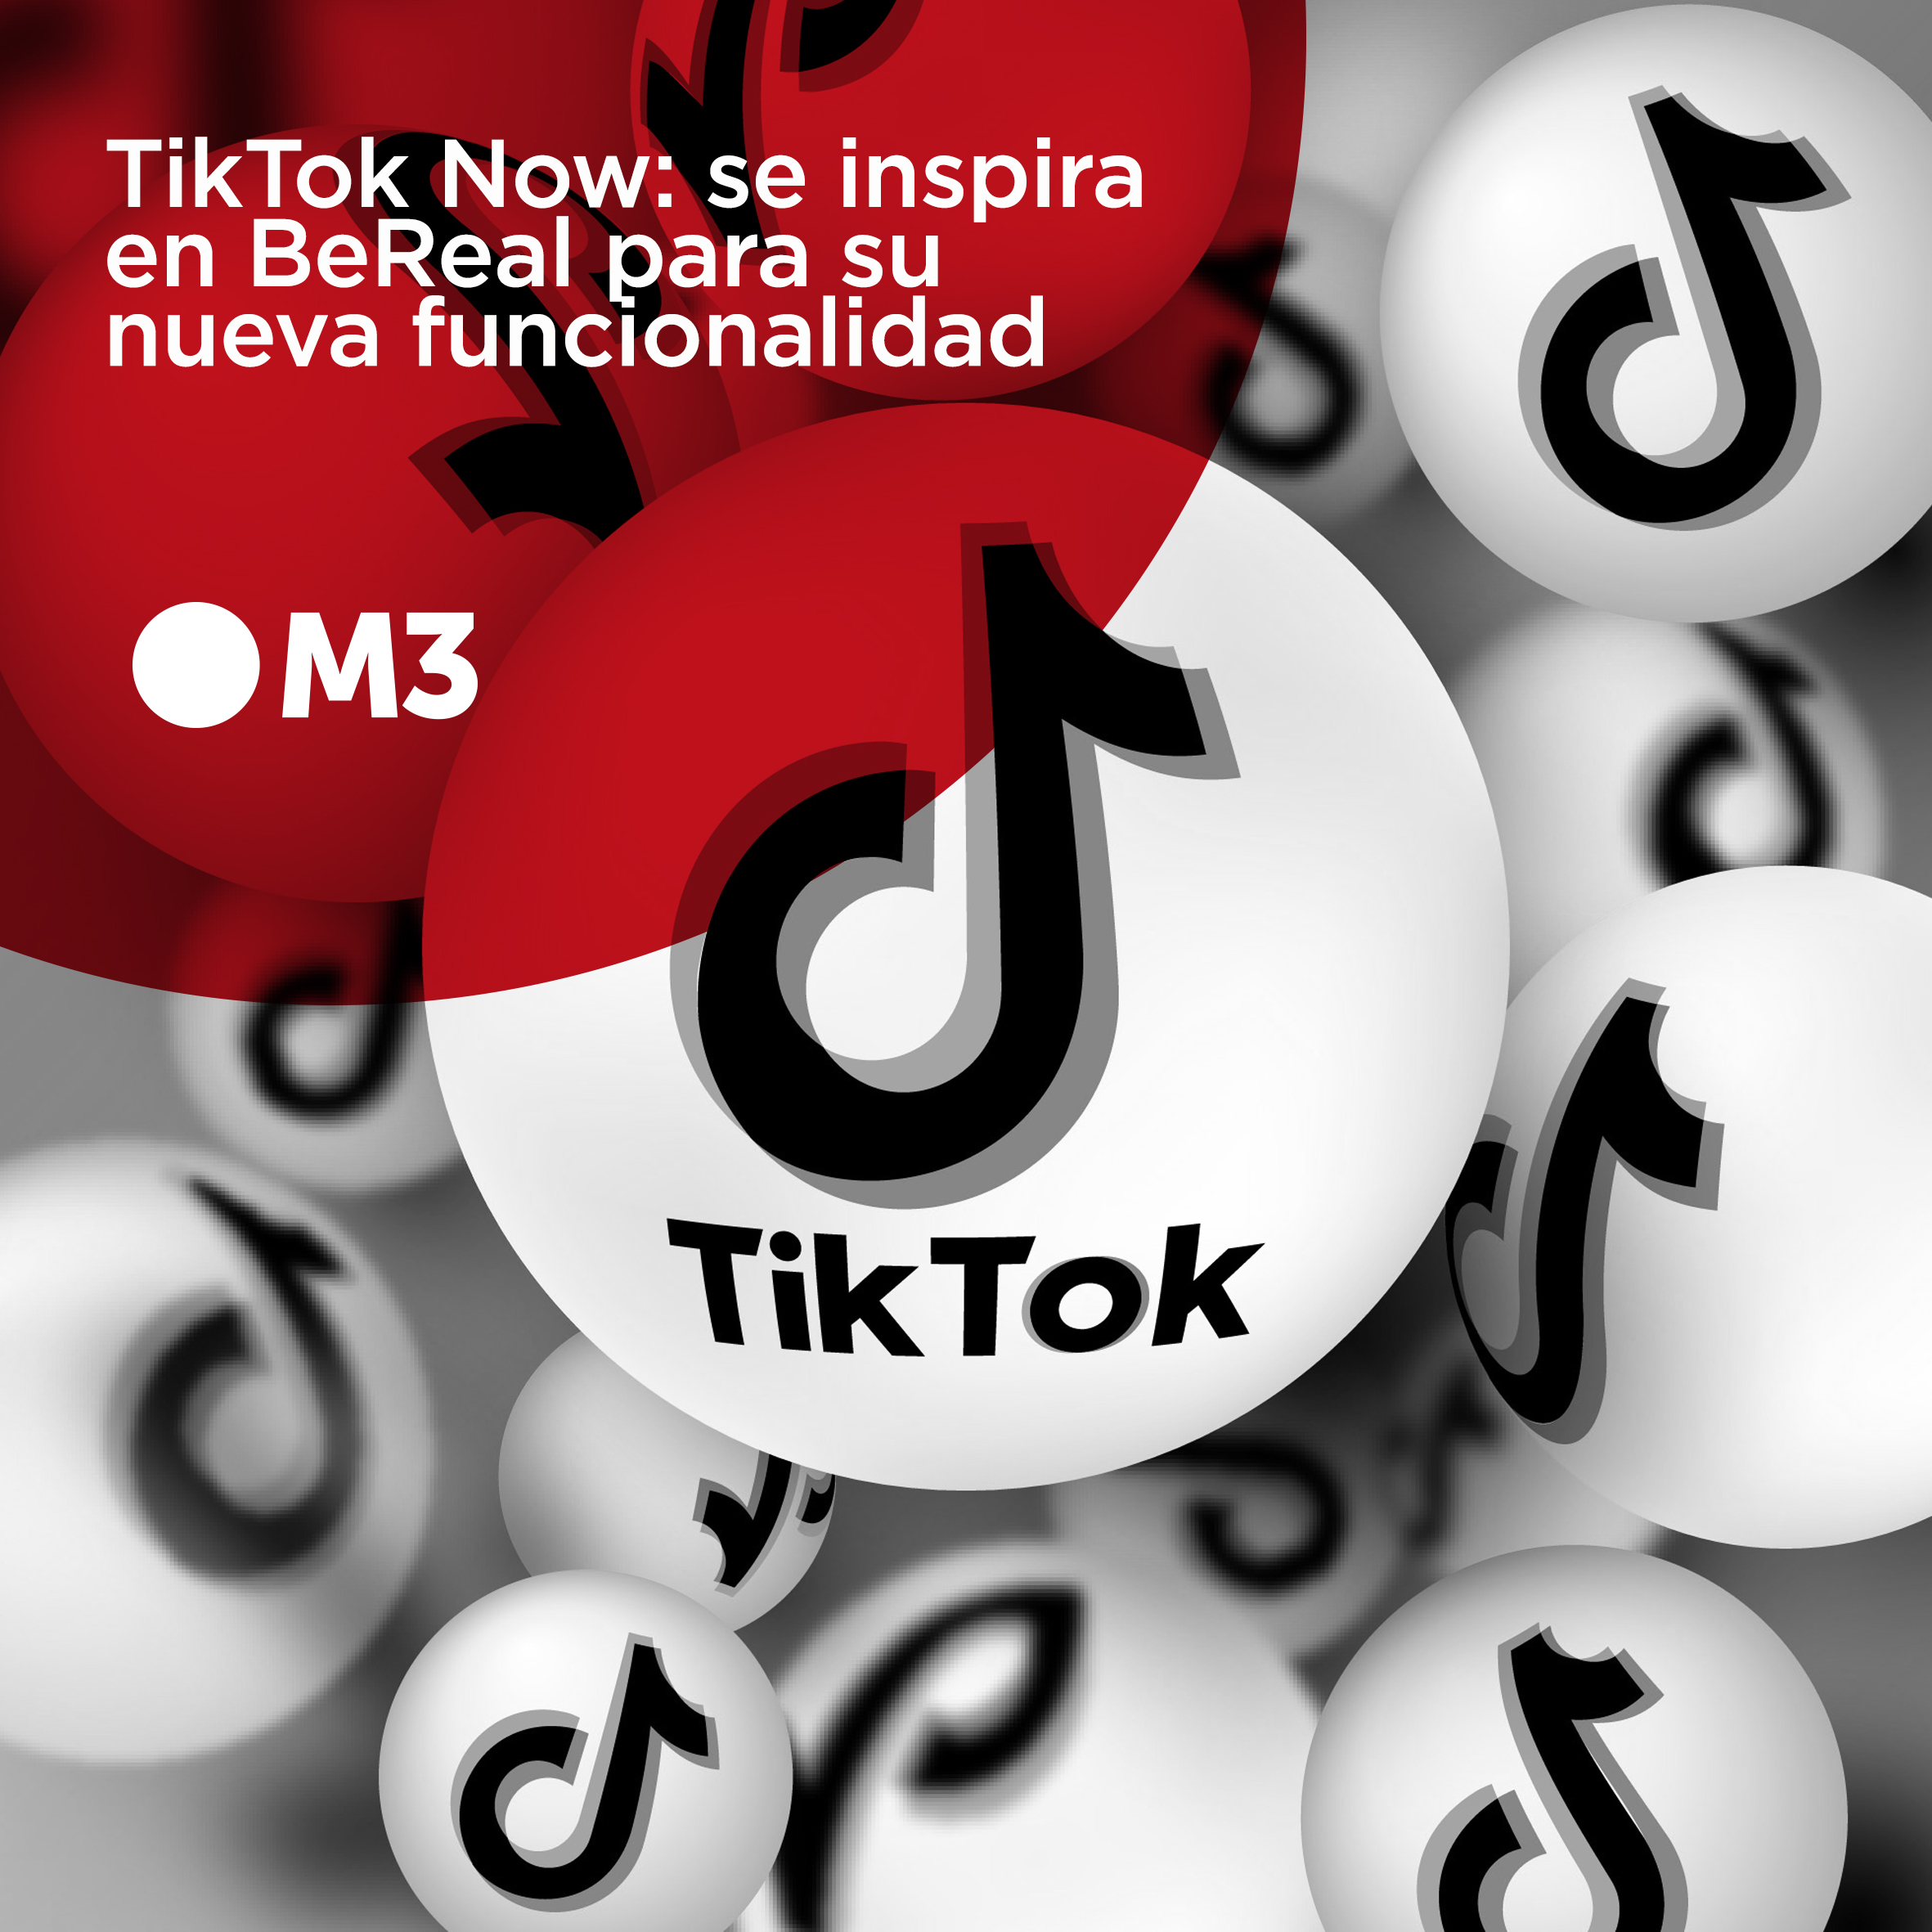 TikTok Now: se inspira en BeReal para su nueva funcionalidad